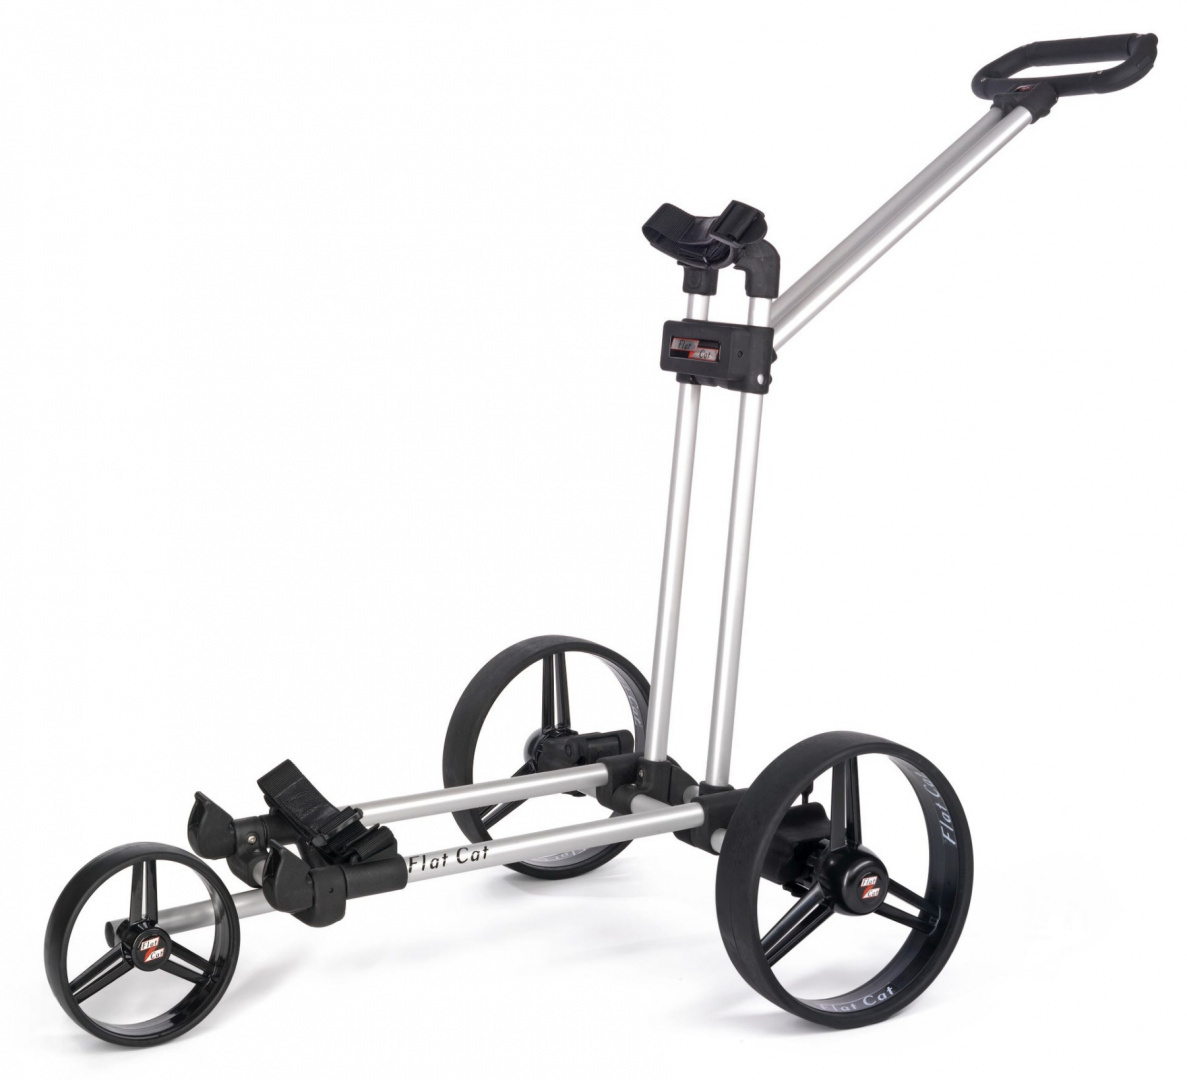 Manualny wózek golfowy FLAT CAT Push, lekki aluminiowy, składany na płasko (srebrny)